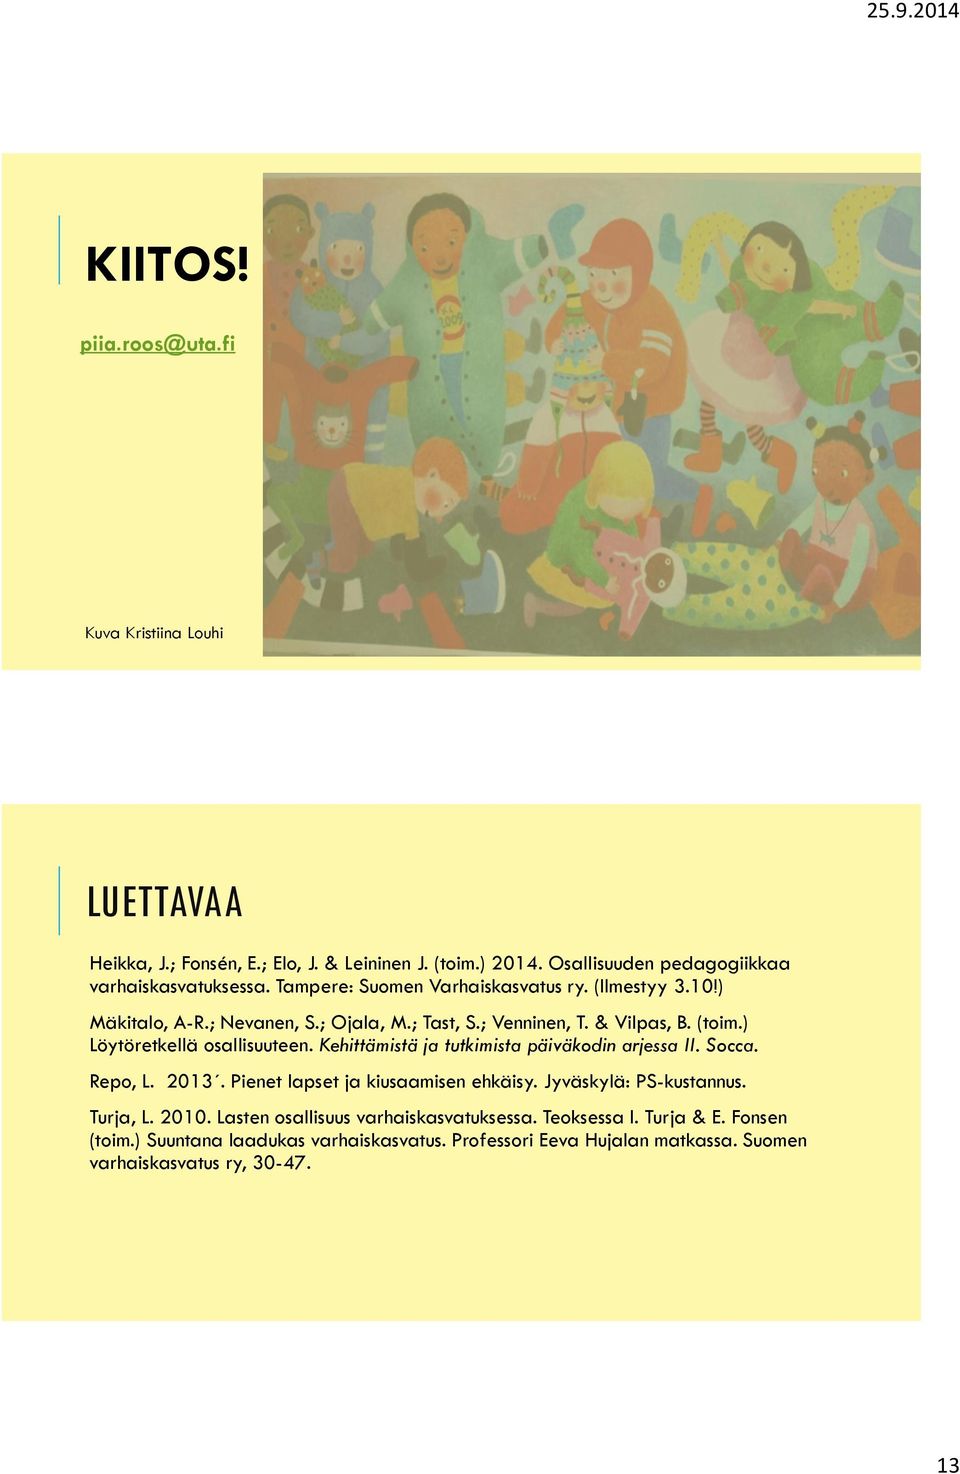 Kehittämistä ja tutkimista päiväkodin arjessa II. Socca. Repo, L. 2013. Pienet lapset ja kiusaamisen ehkäisy. Jyväskylä: PS-kustannus. Turja, L. 2010.